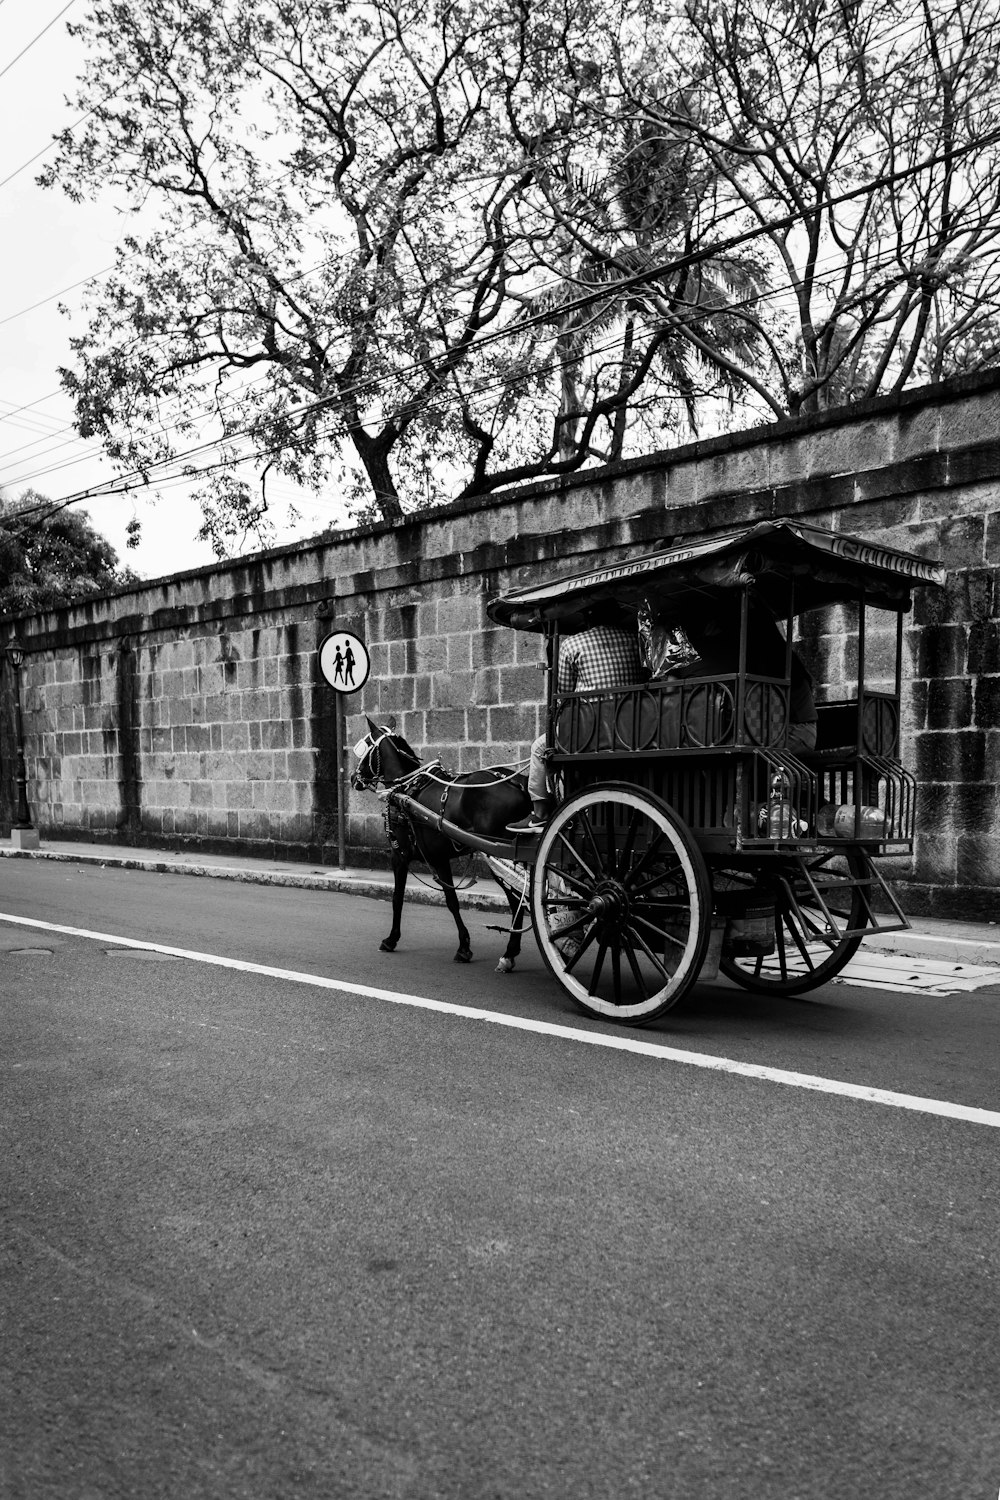 Foto in scala di grigi della carrozza a cavalli su strada